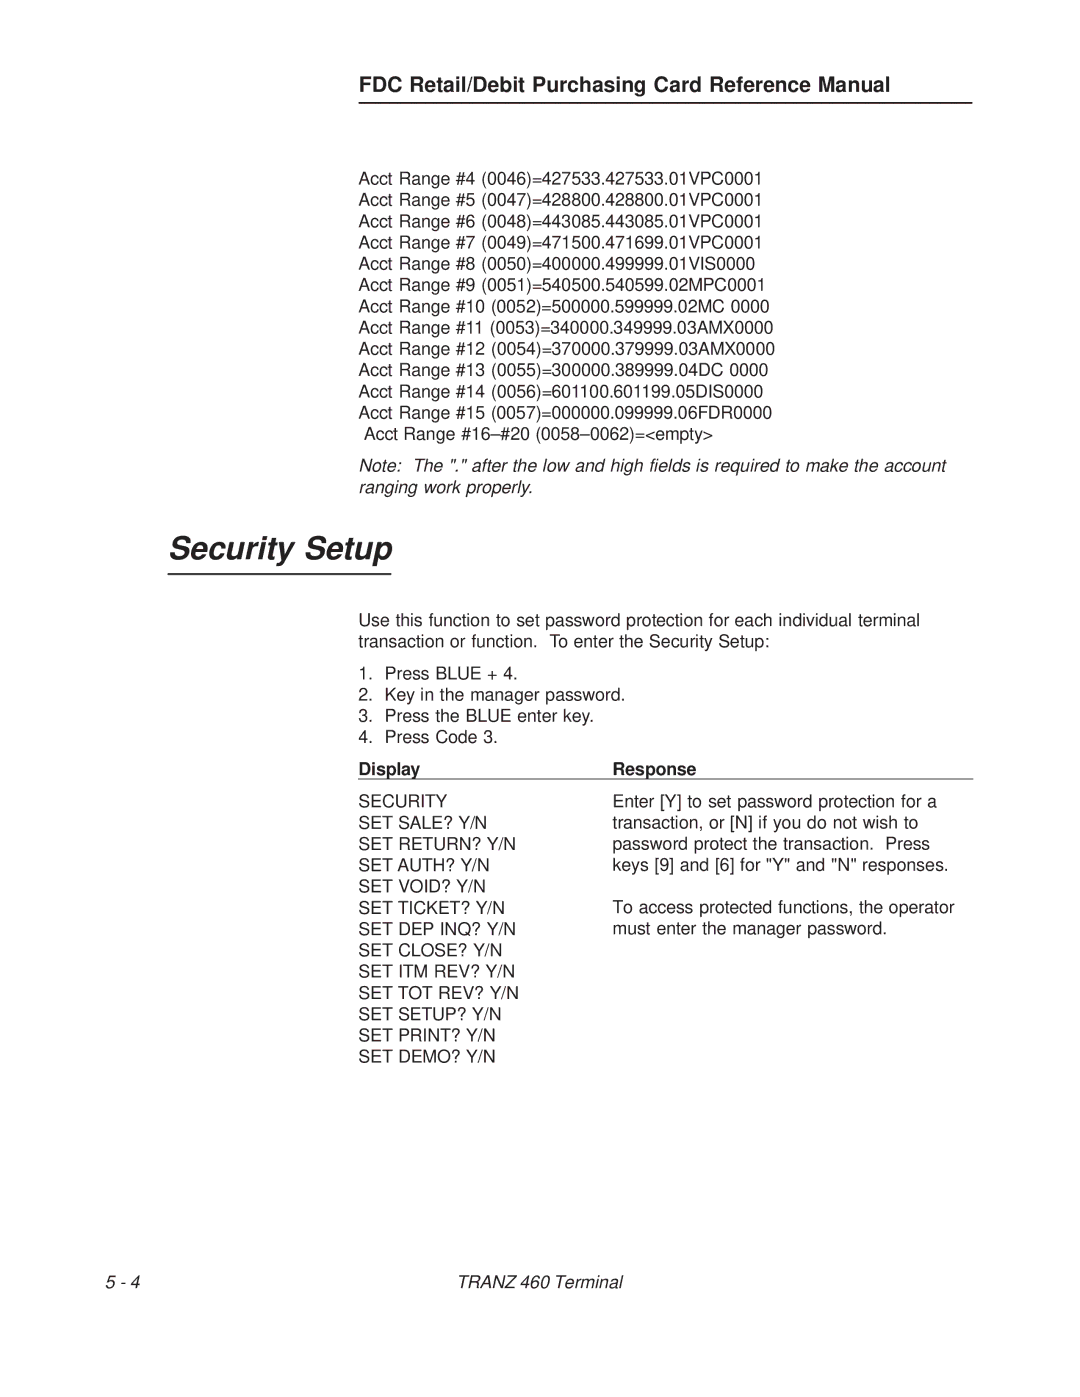 VeriFone TRANZ 460 manual Security Setup 